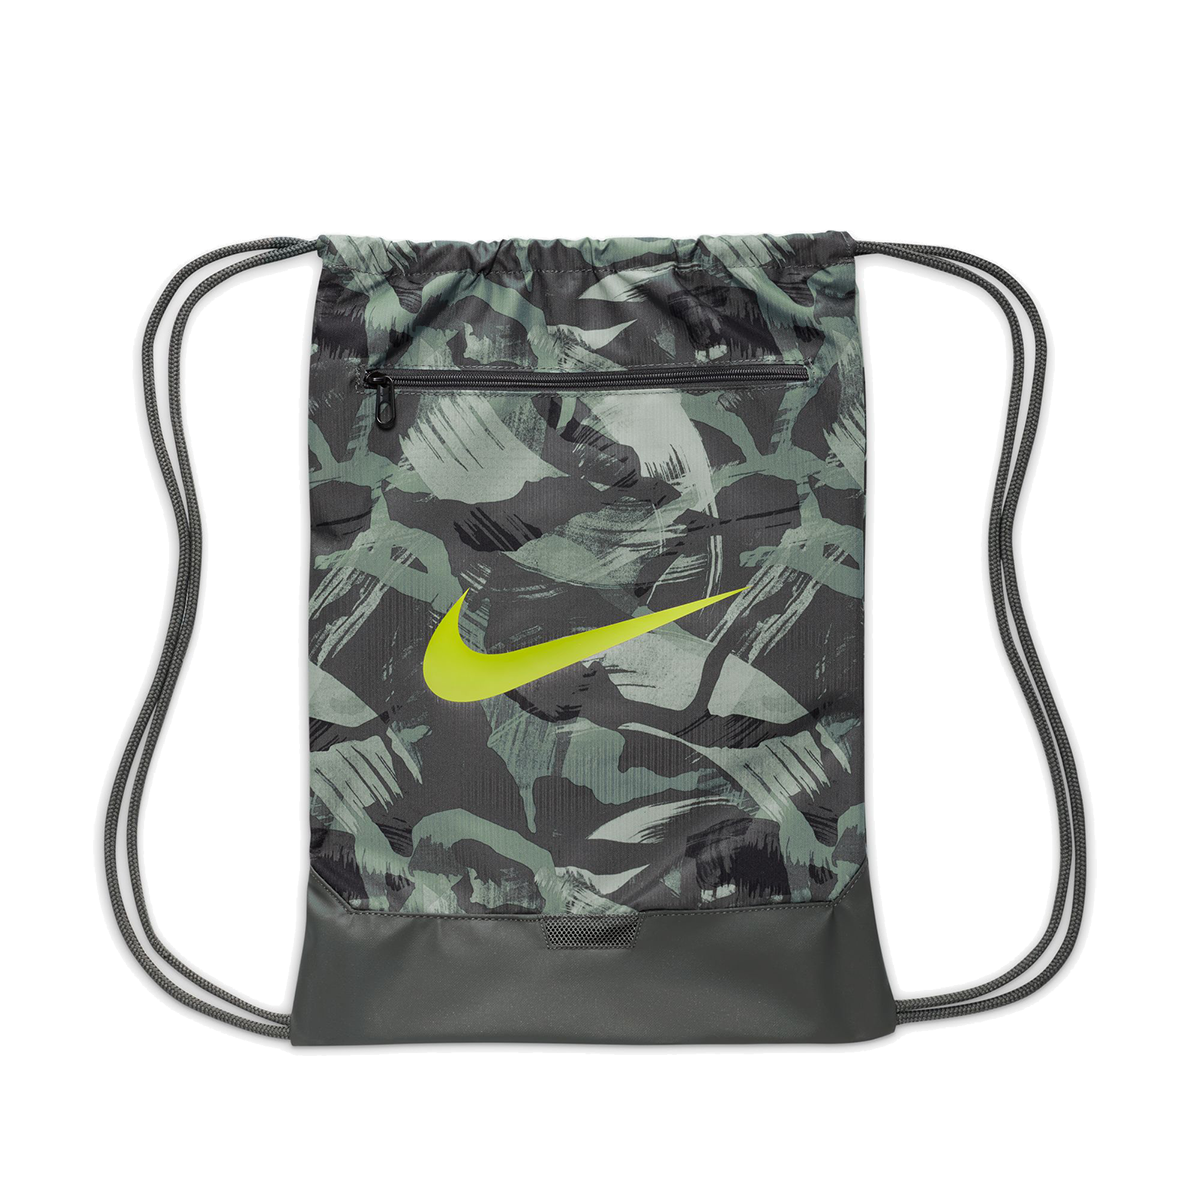 Nike Brasilia 9.5 Gymsack, , large image number null